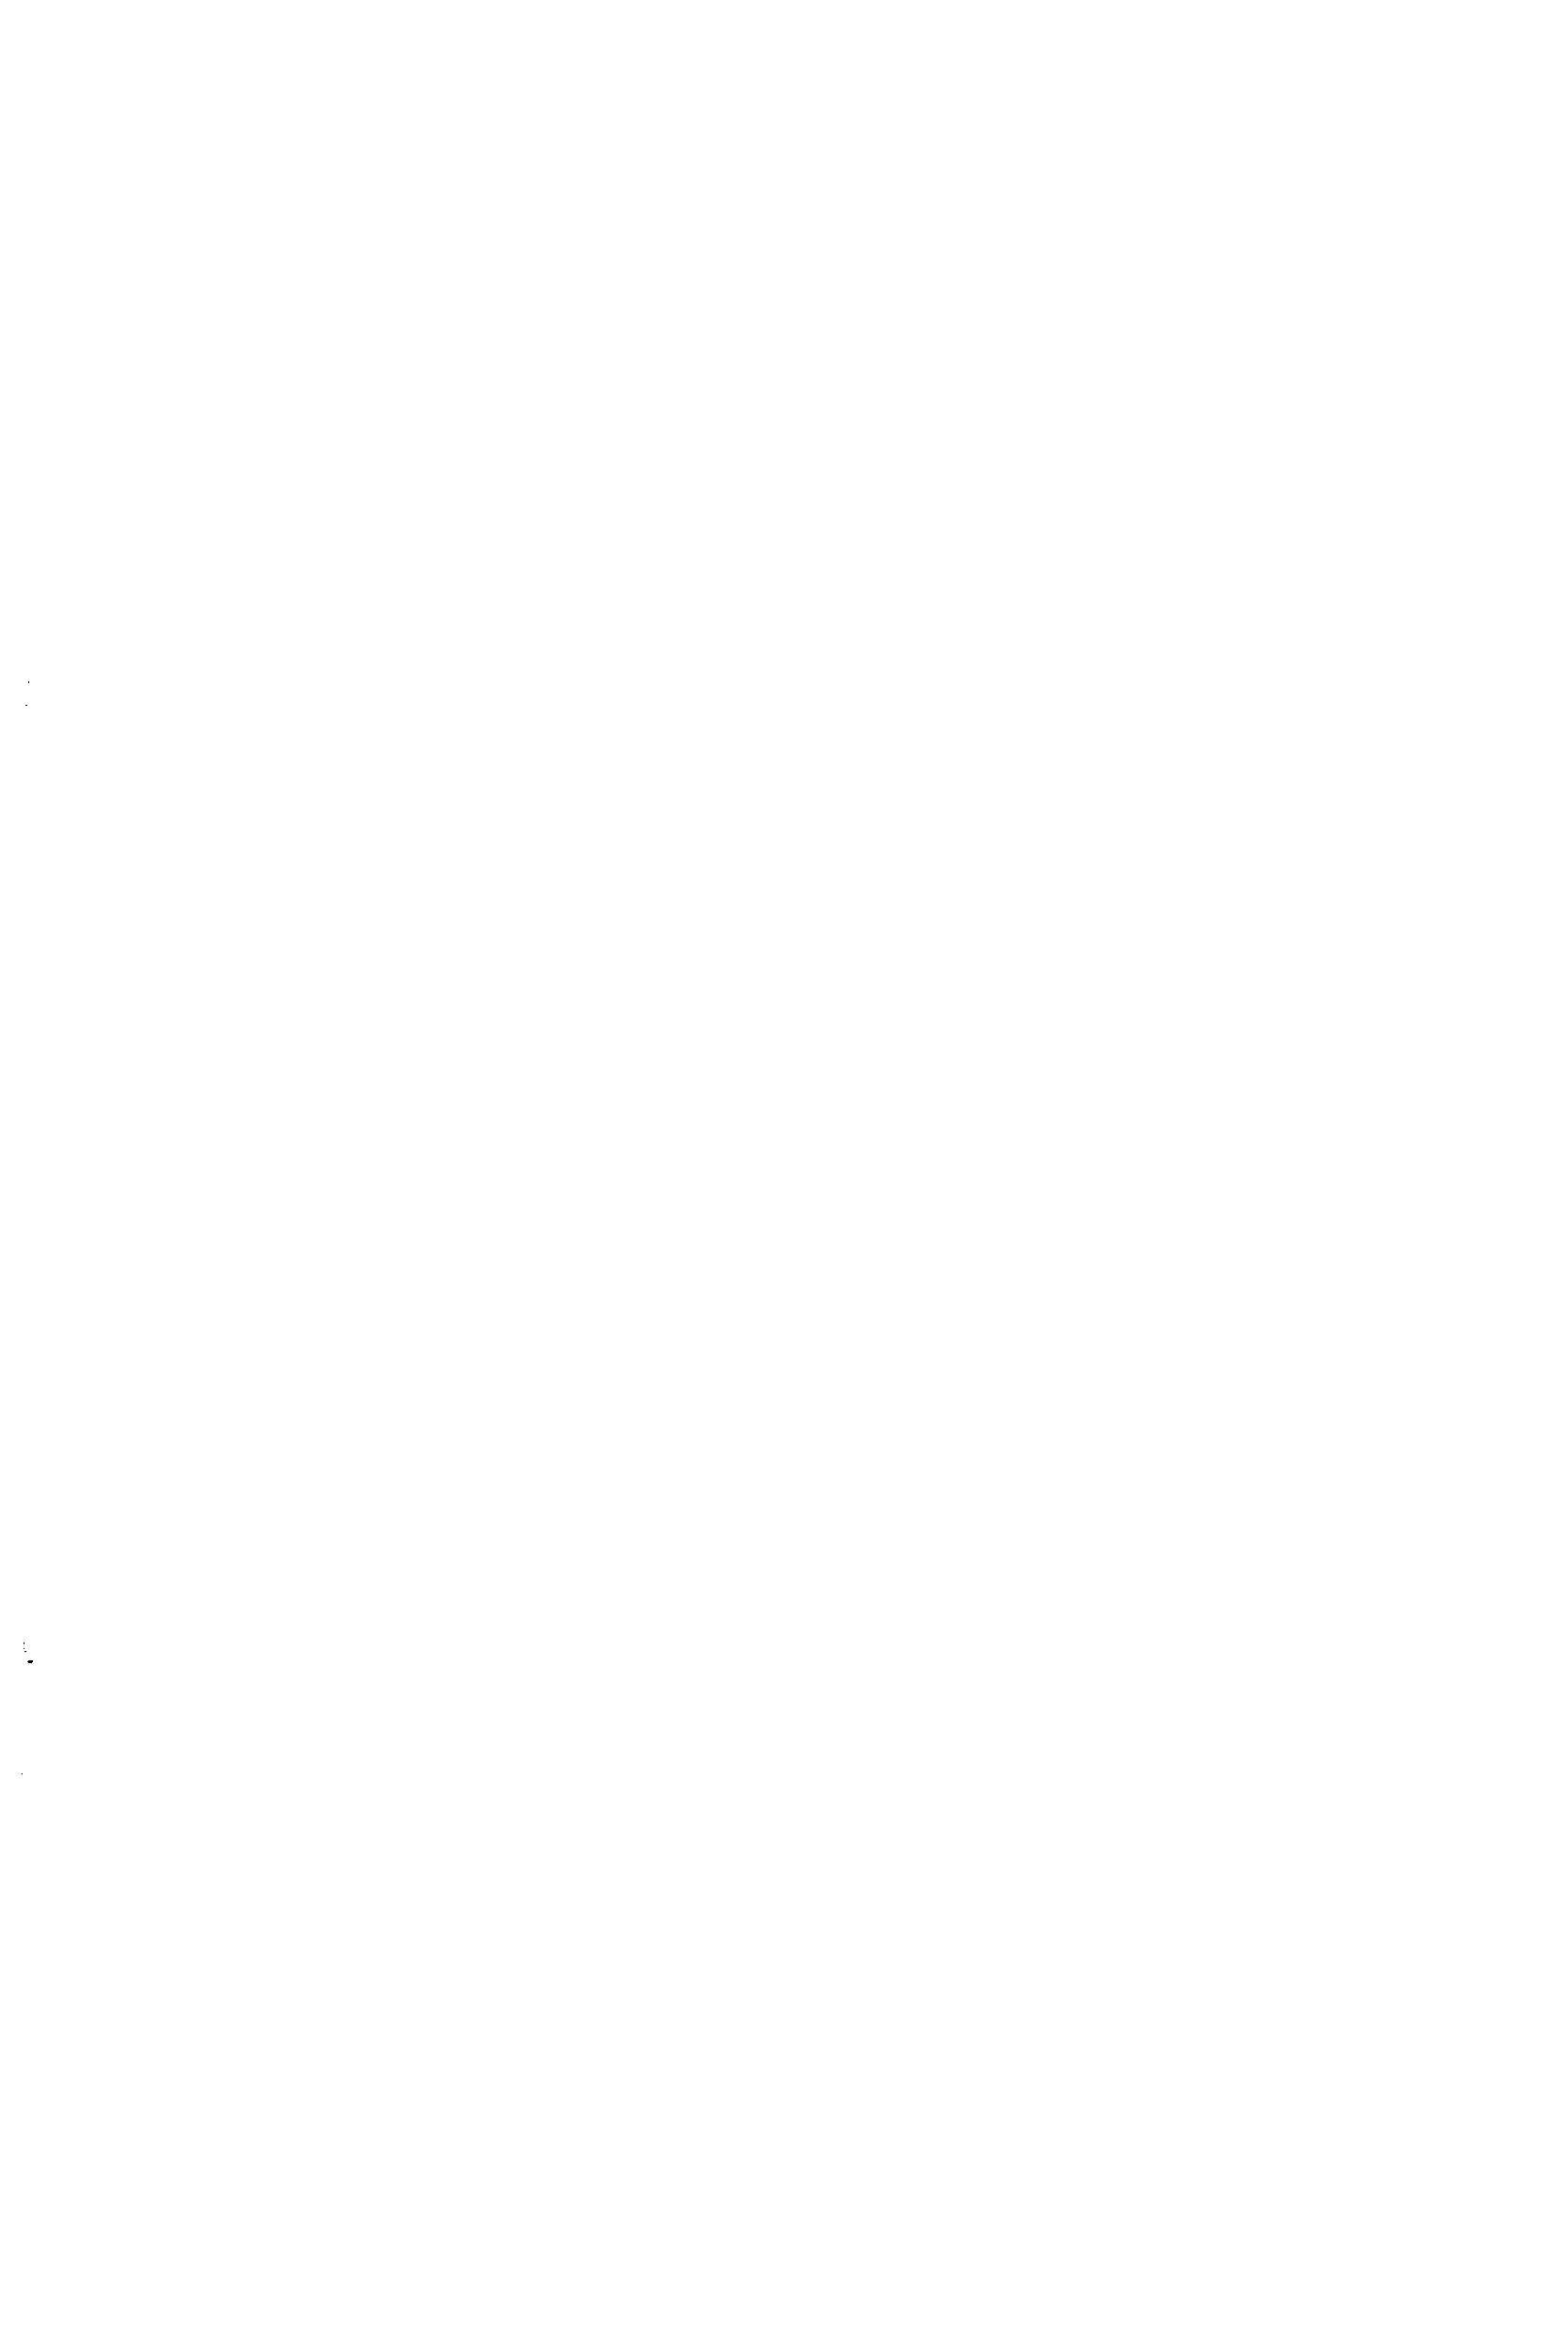 Рис. 11-ХП. Эпюры кольцевых <a href="/info/5974">температурных напряжений</a> в <a href="/info/7024">поперечном сечении</a> адсорбционной башни в зимний (а) и летний (б) периоды 
